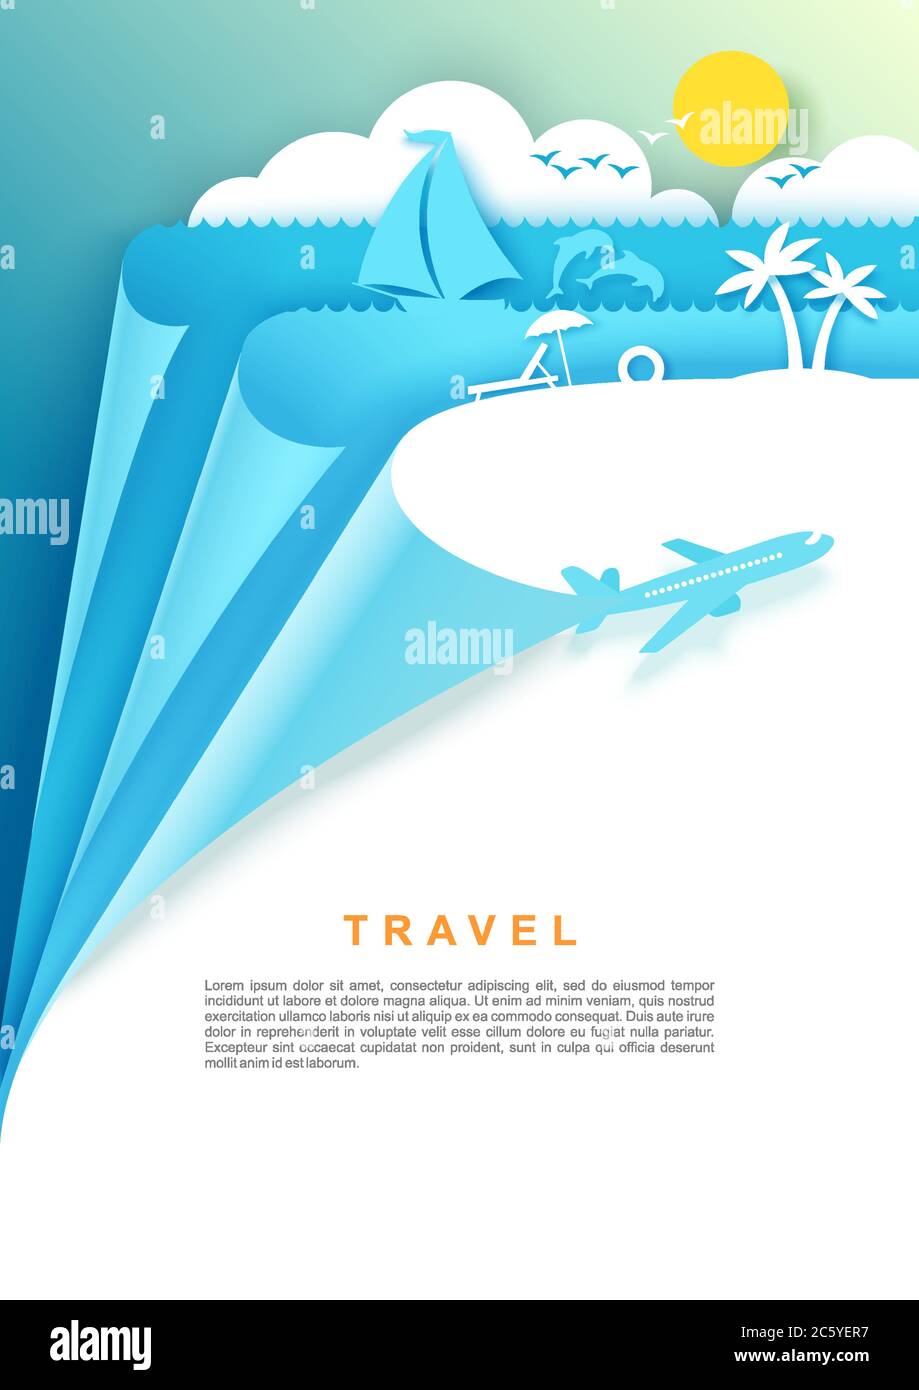 Poster de voyage, modèle de bannière, illustration vectorielle en style art papier Illustration de Vecteur